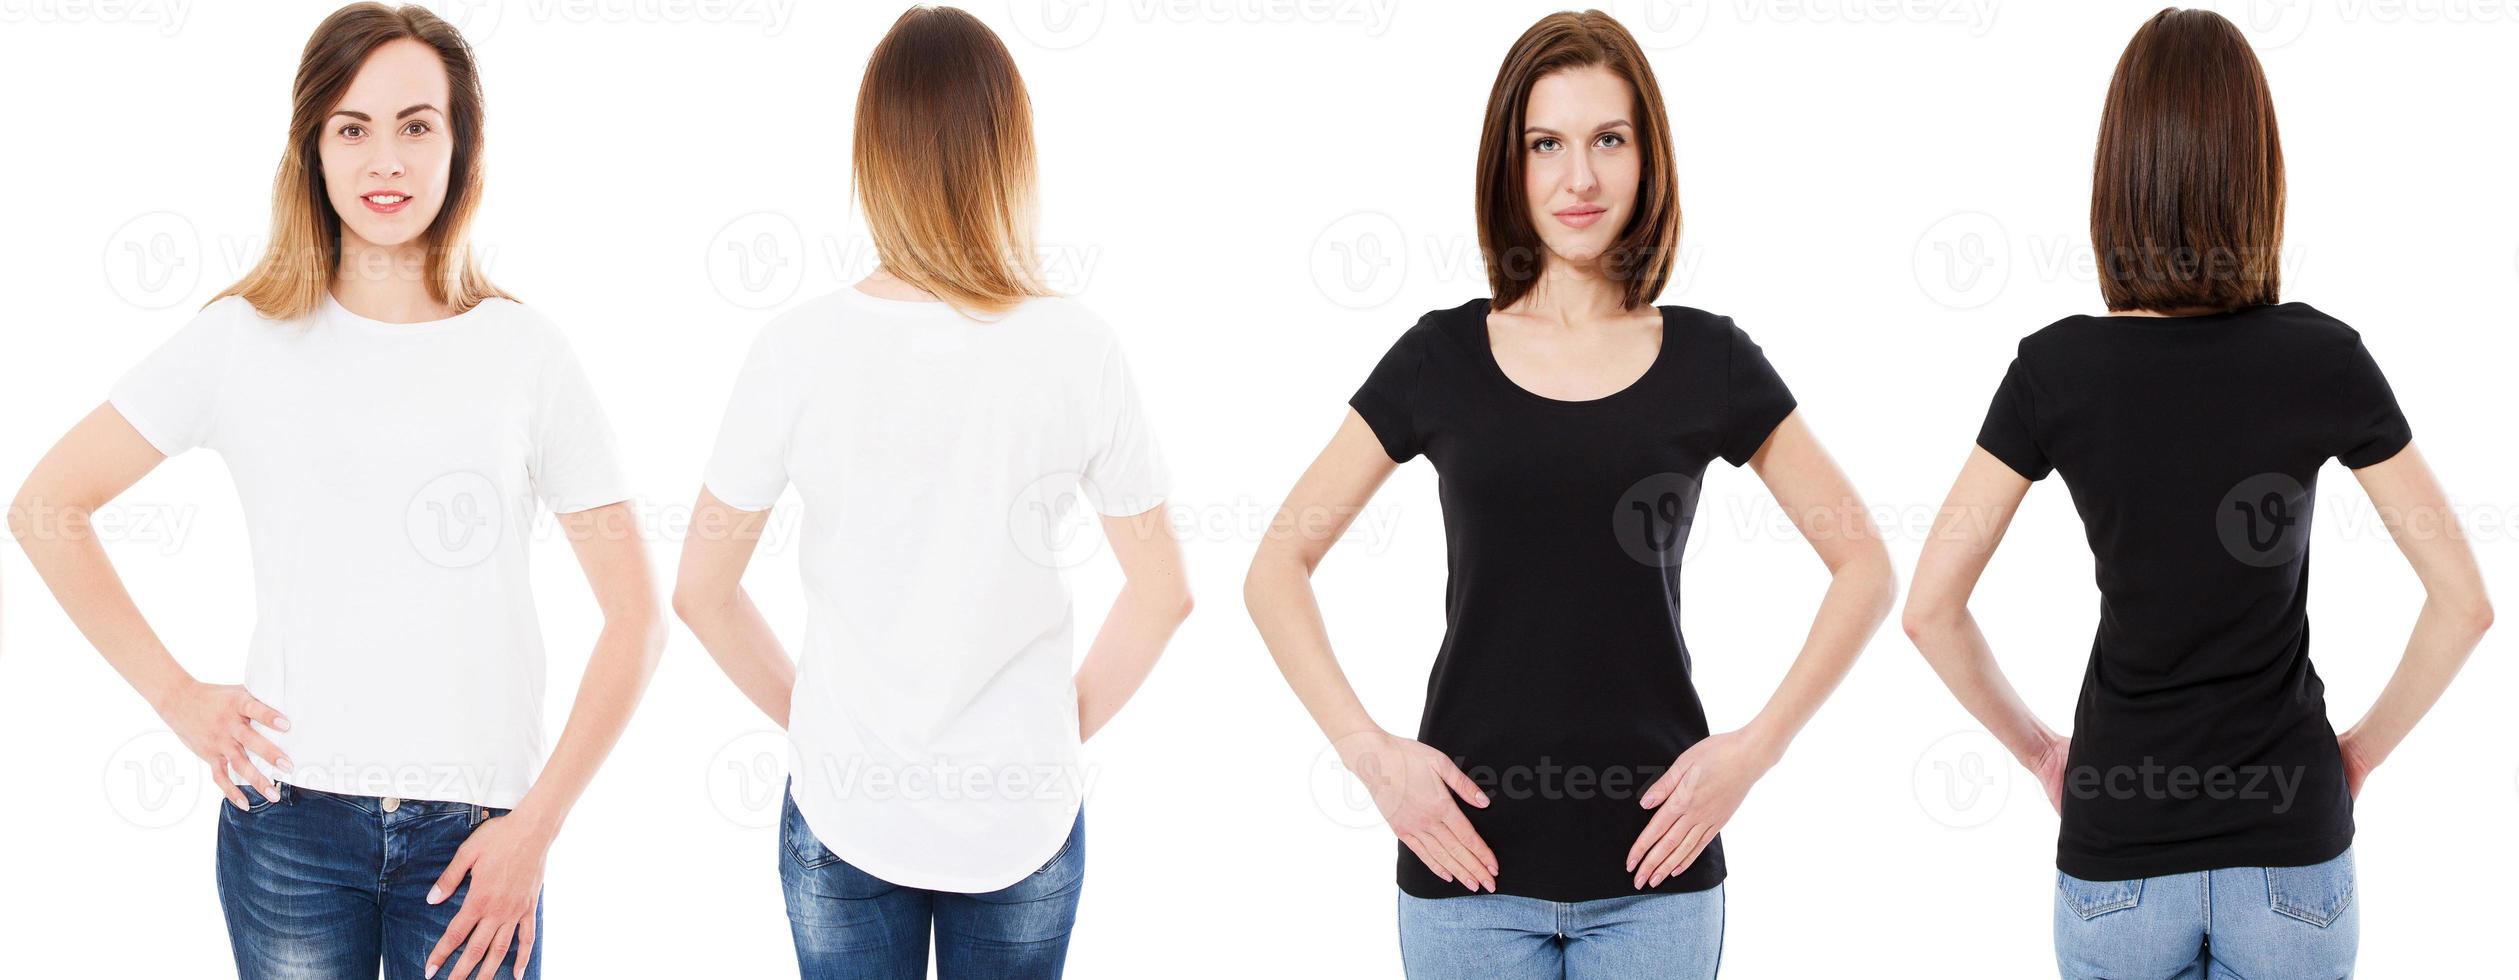 kvinna i vit t-shirt och brunett flicka i svart t-shirt isolerad på vit bakgrund framifrån och bakifrån, mockup, kopiera utrymme. foto